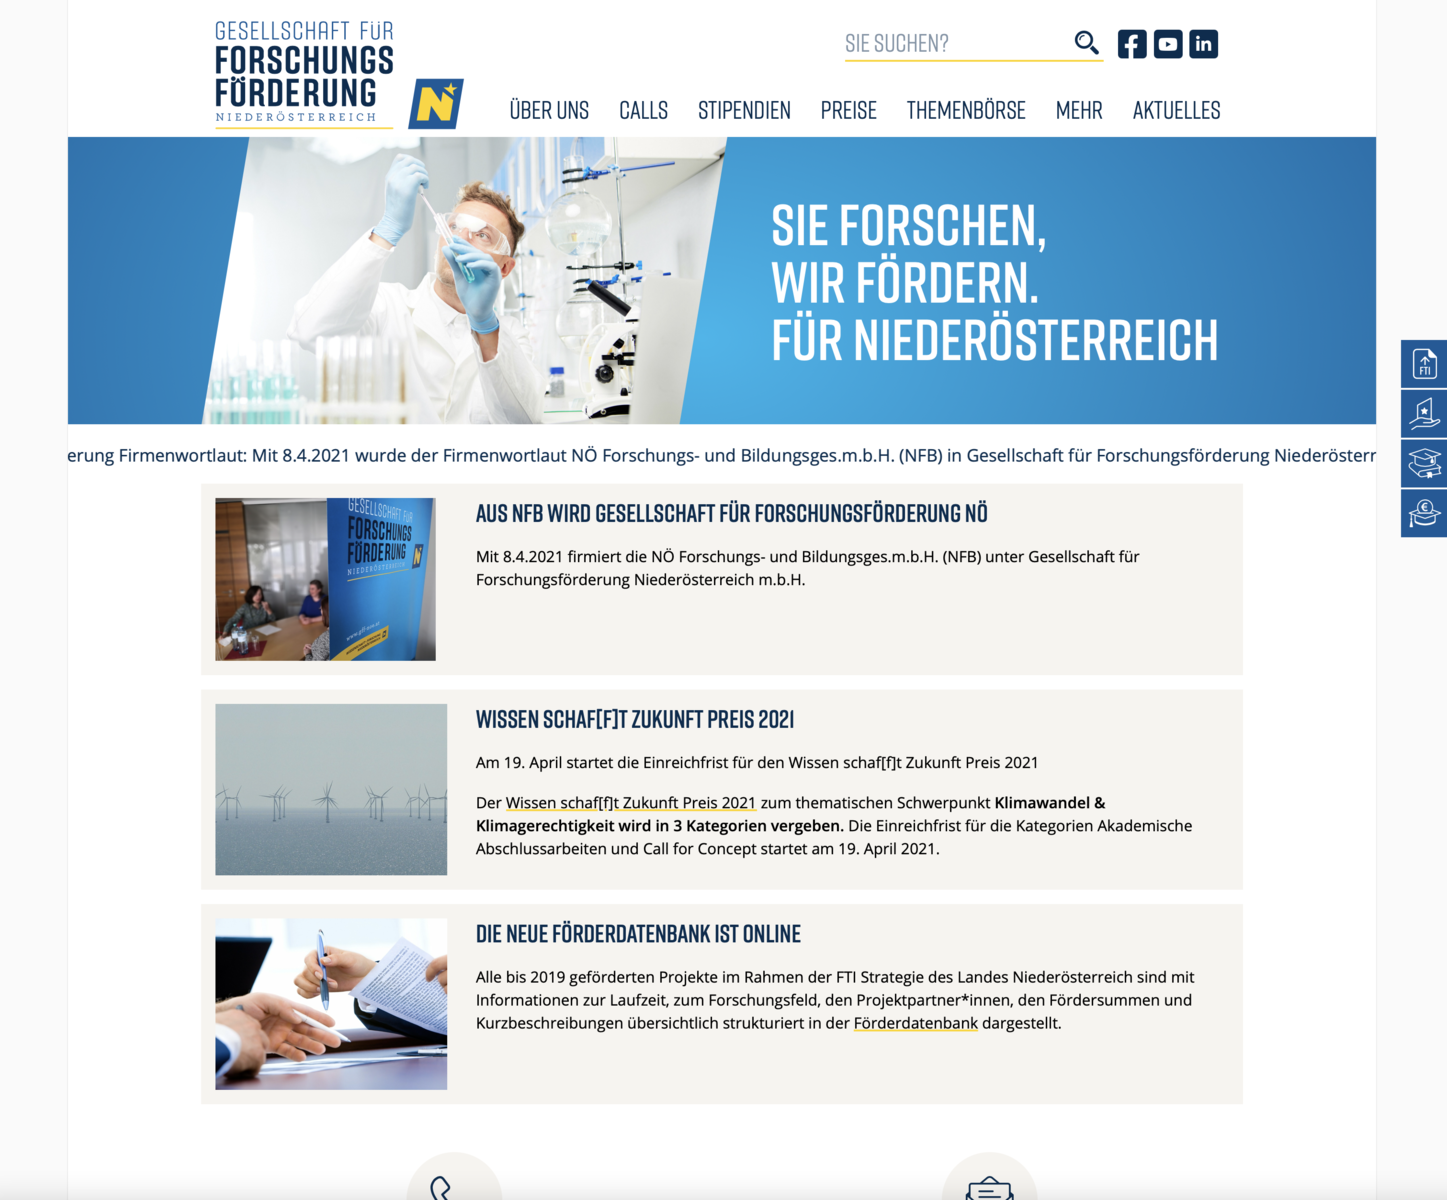 Website der Gesellschaft für Forschungsförderung Niederösterreich m.b.H.